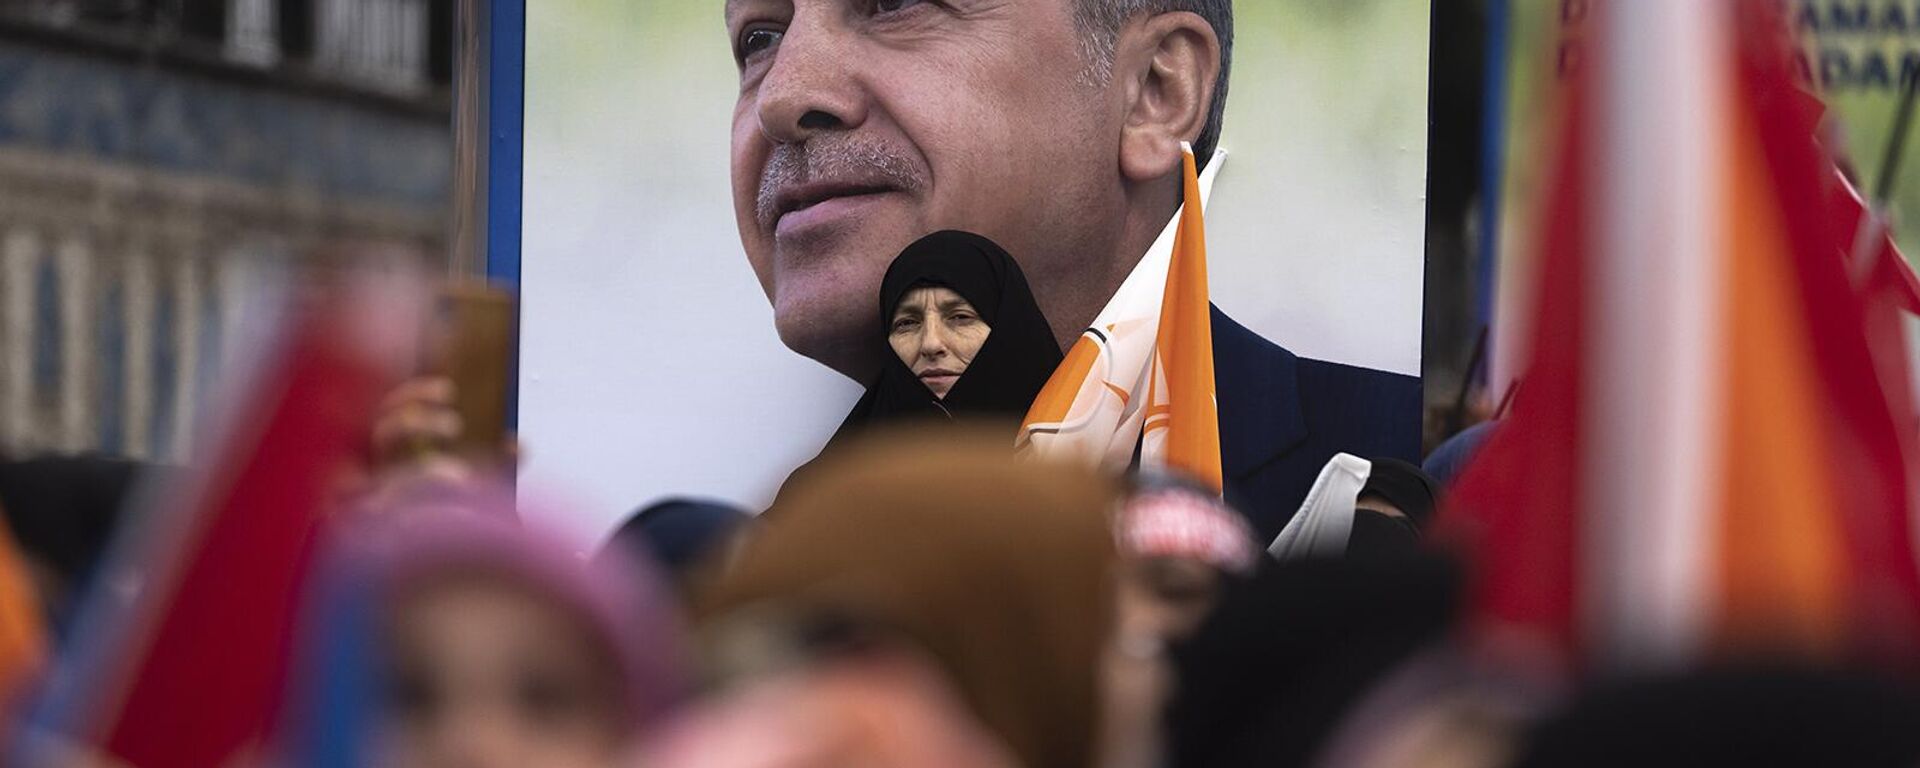 Сторонники кандидата в президенты от Народного альянса Реджепа Тайипа Эрдогана на предвыборном митинге в Стамбуле (12 мая 2023). Турция - Sputnik Армения, 1920, 29.05.2023